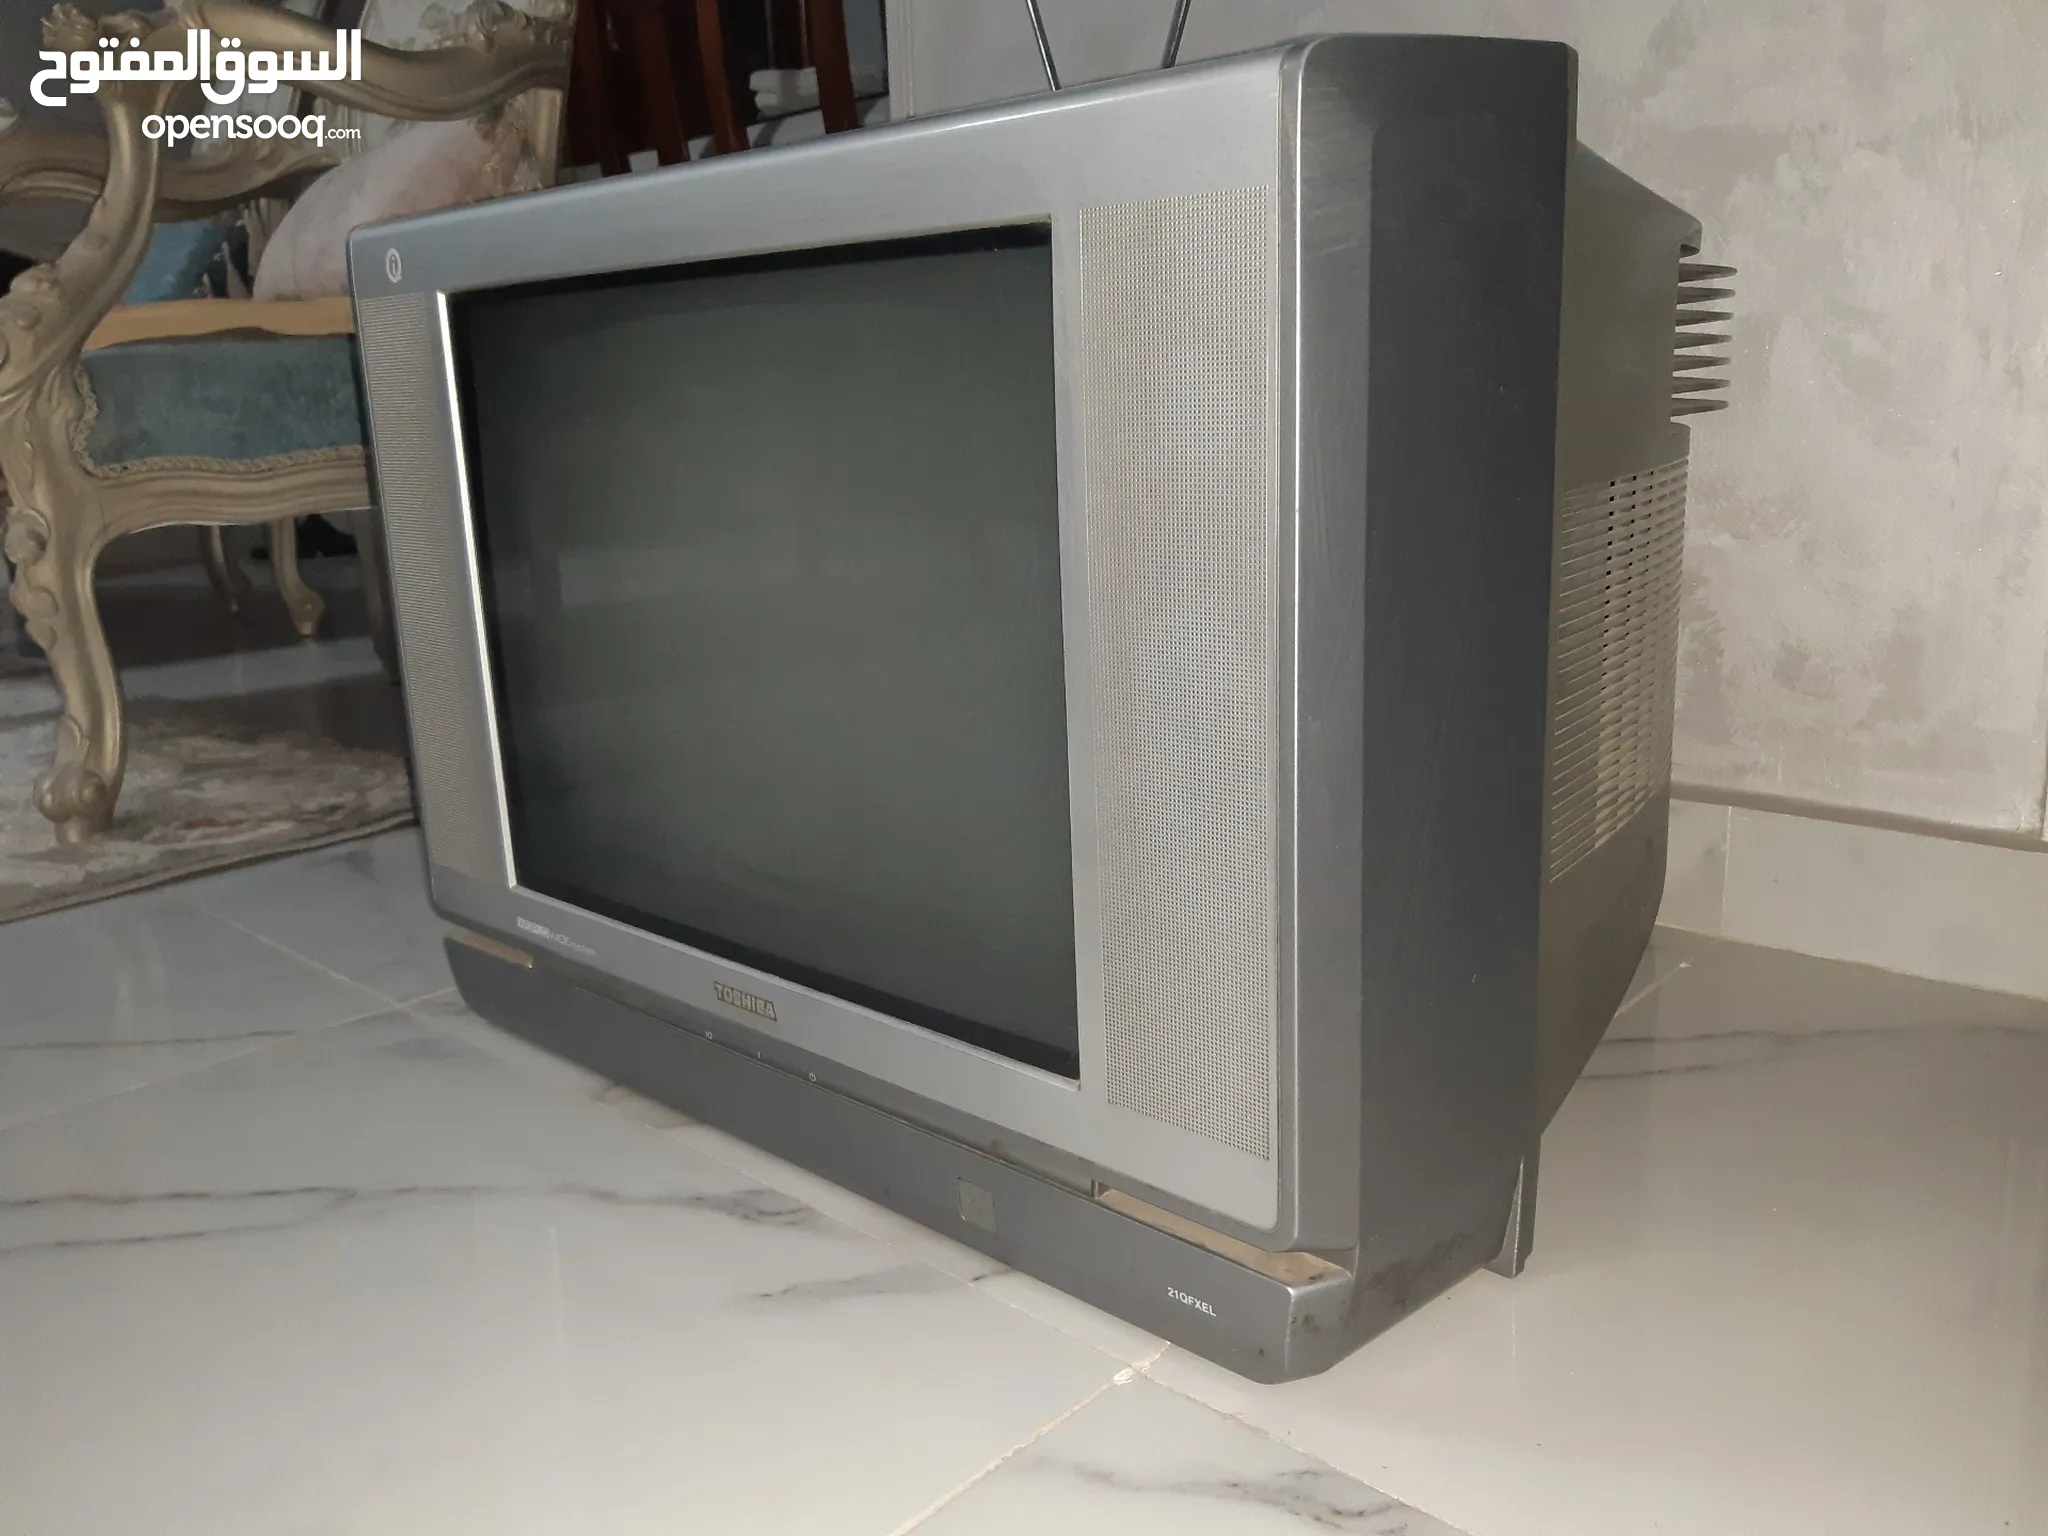 شاشات وتلفزيونات توشيبا للبيع في مصر | السوق المفتوح